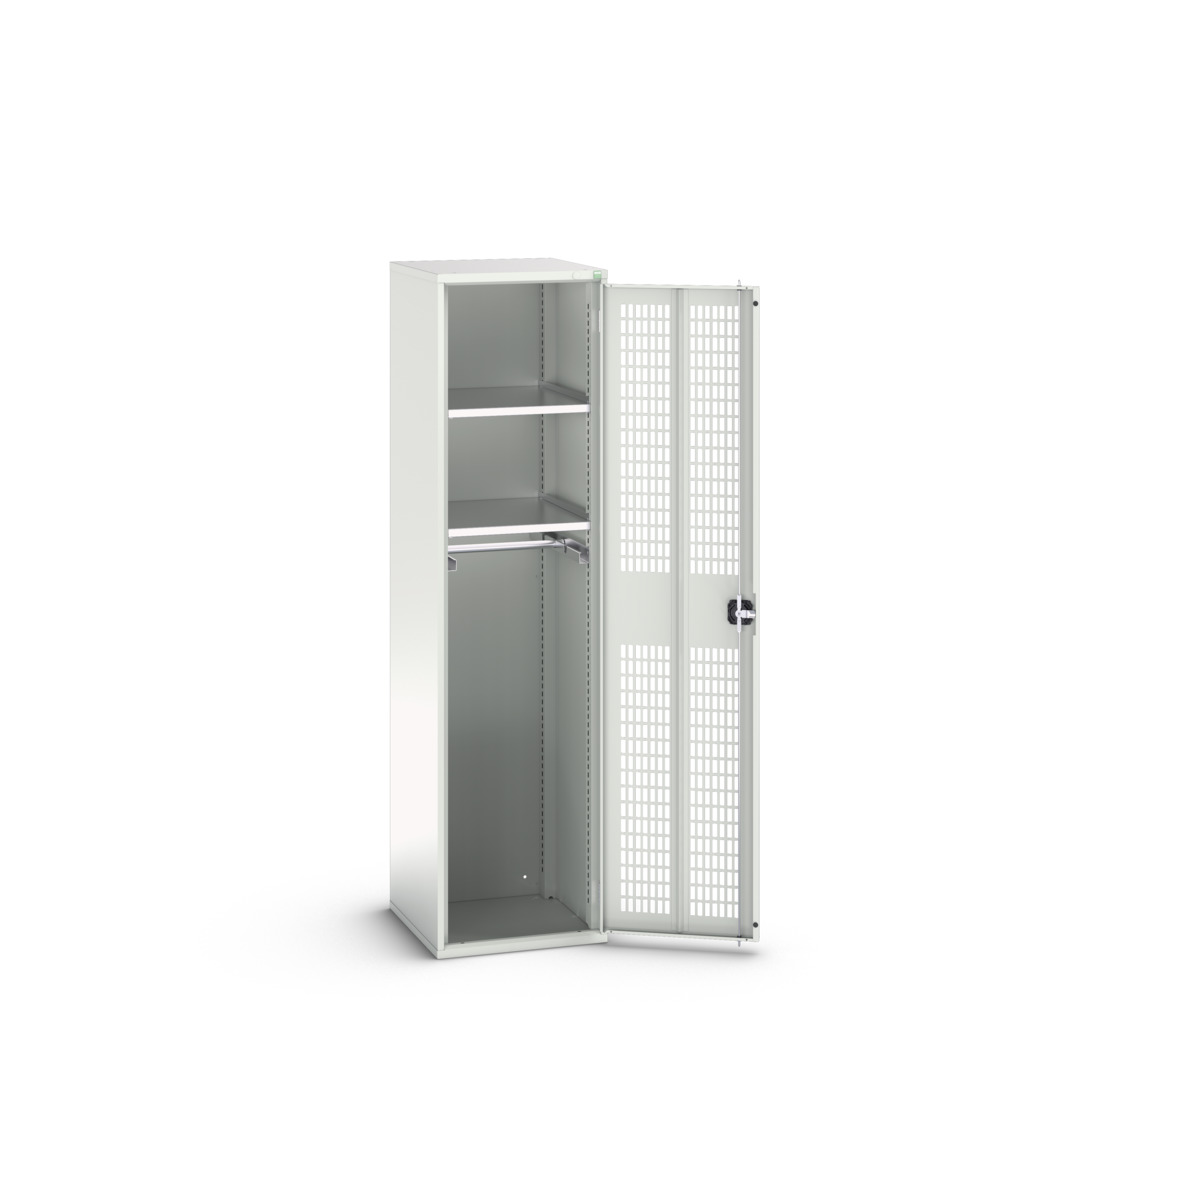 16926725.16 - verso ventilated door kitted cupboard